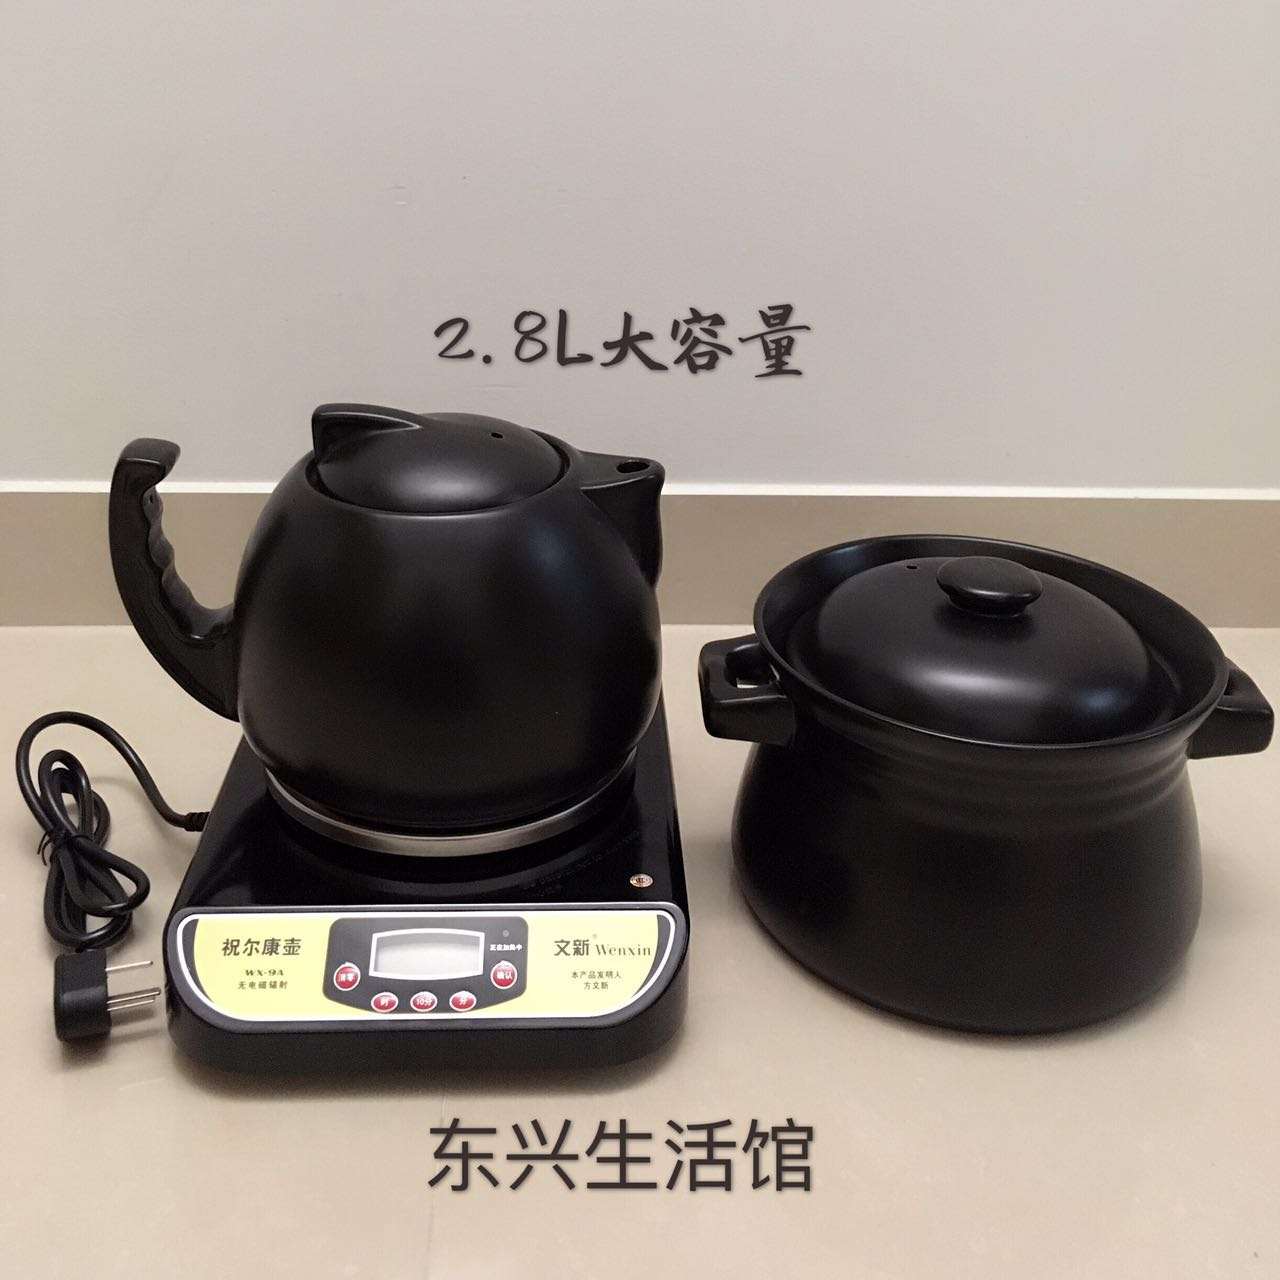 正品文新祝尔康药壶全自动分体式多功能陶瓷煲汤WX-9A保健养生煎